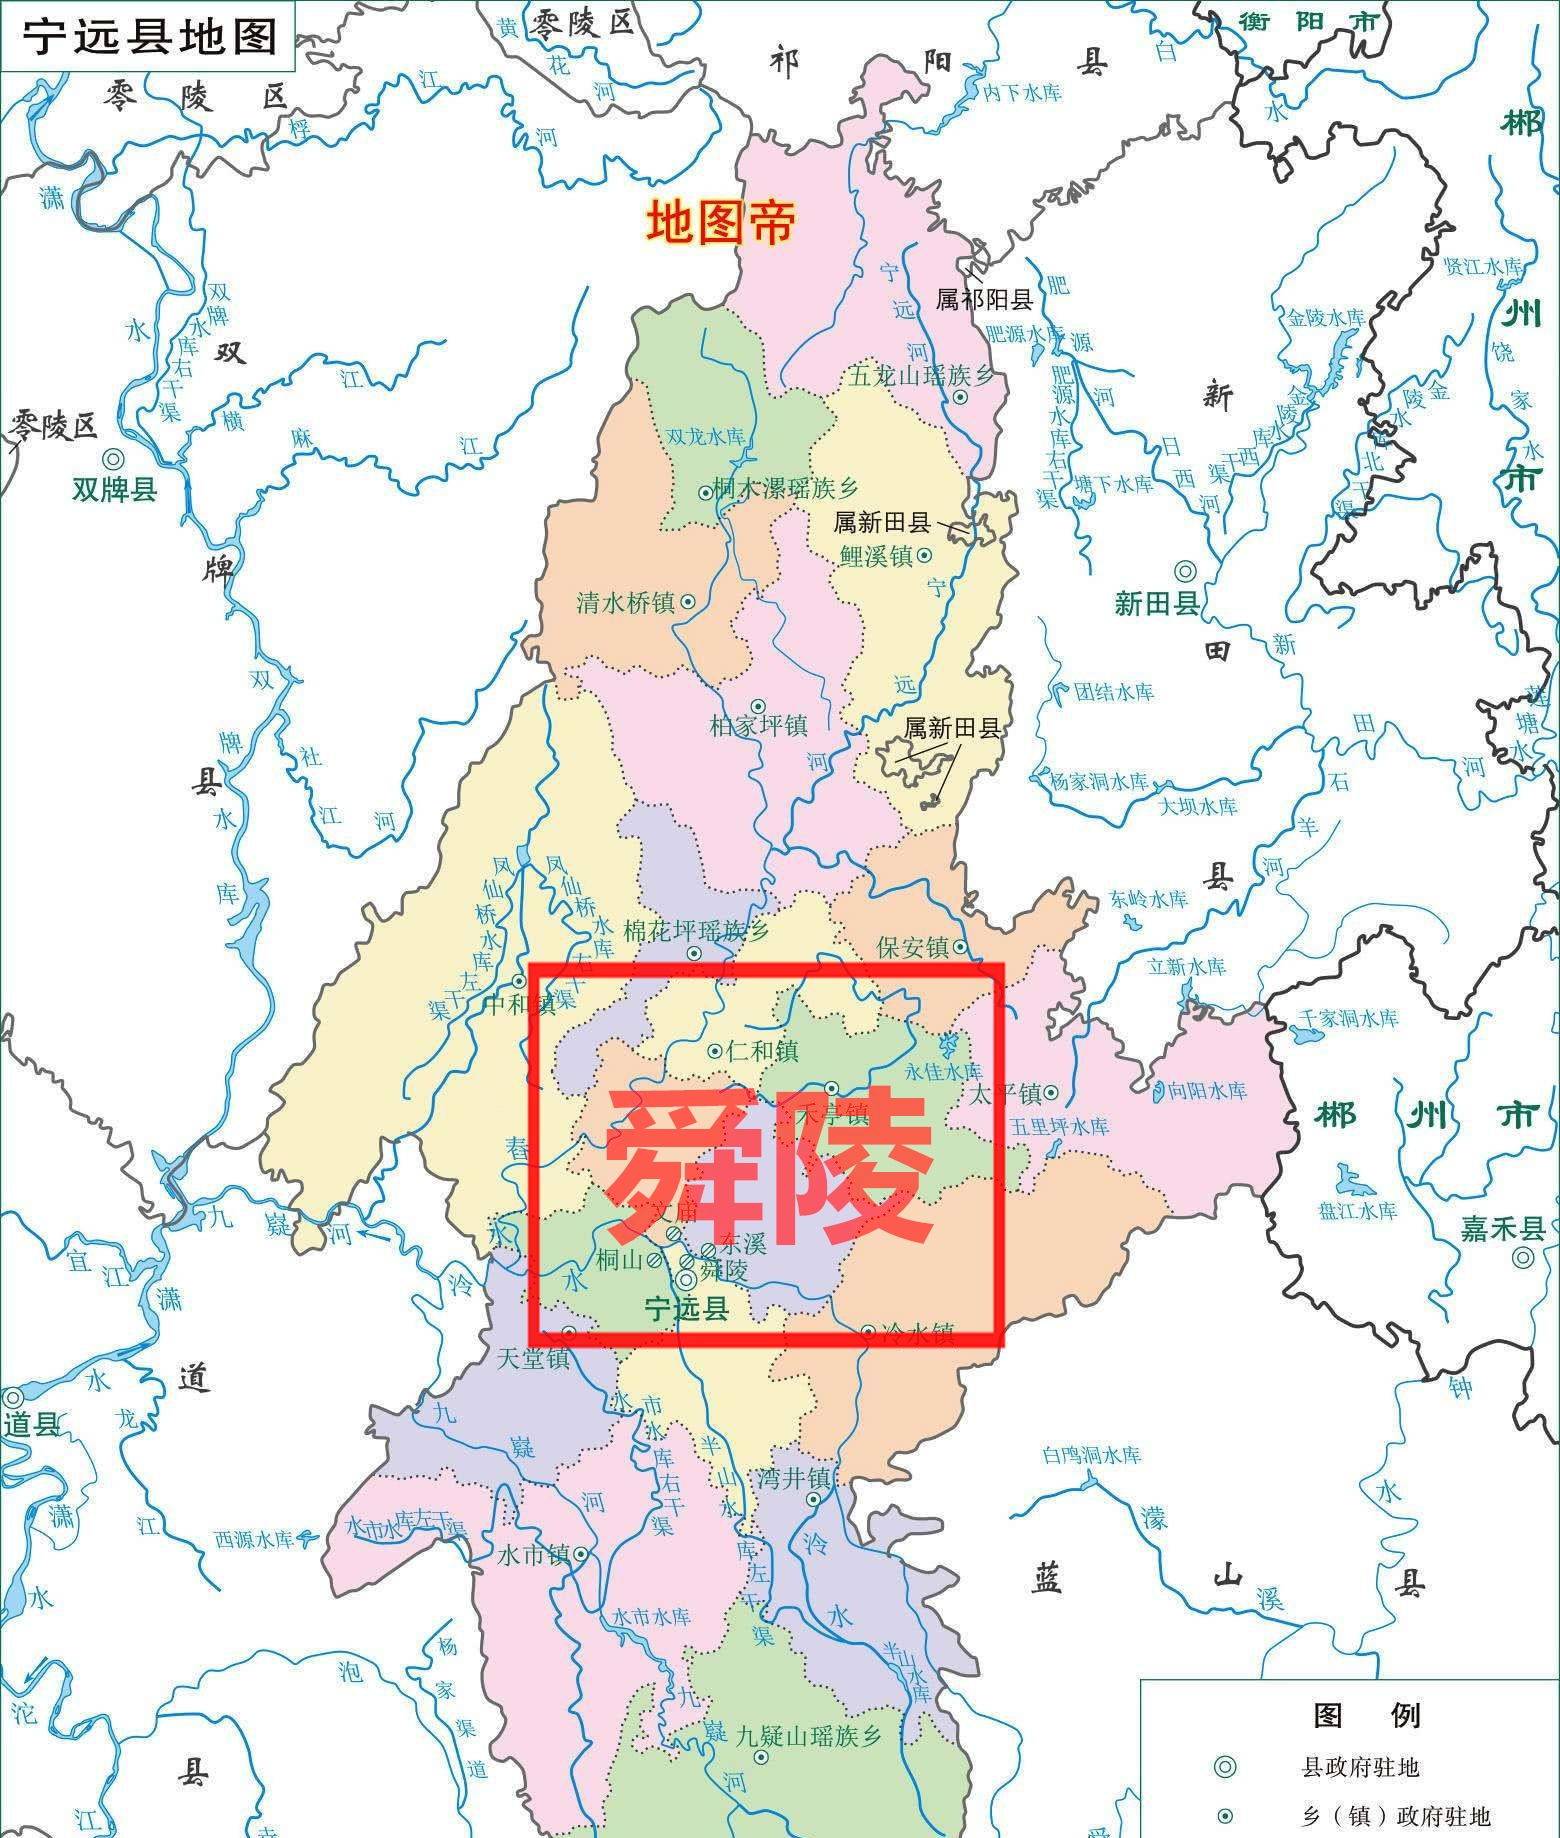 如图:宁远县地图(上北下南)